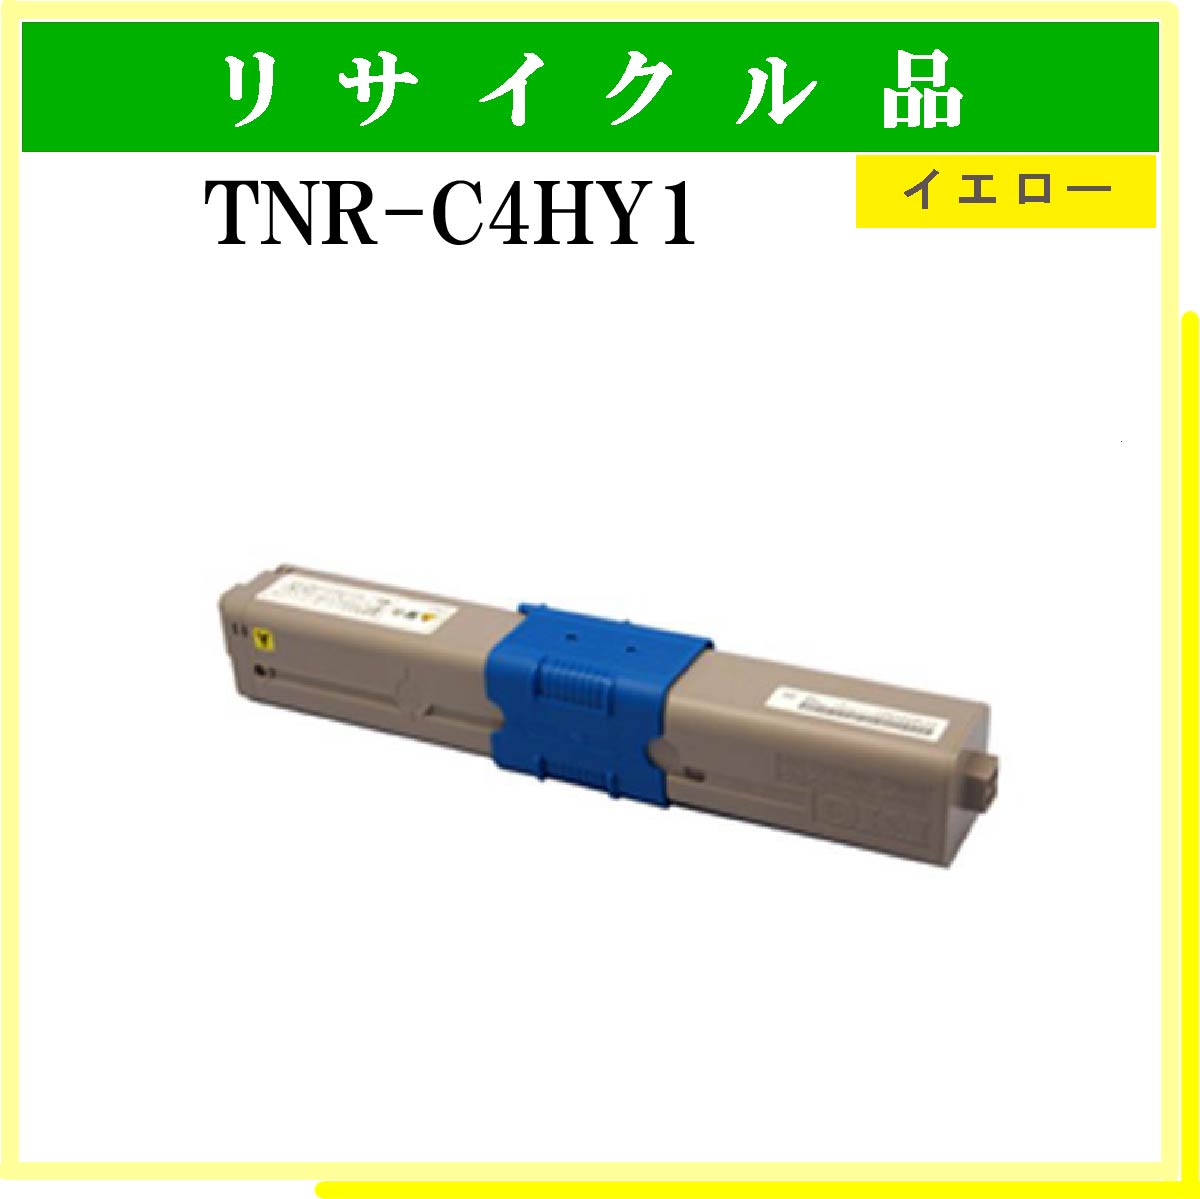 TNR-C4HY1